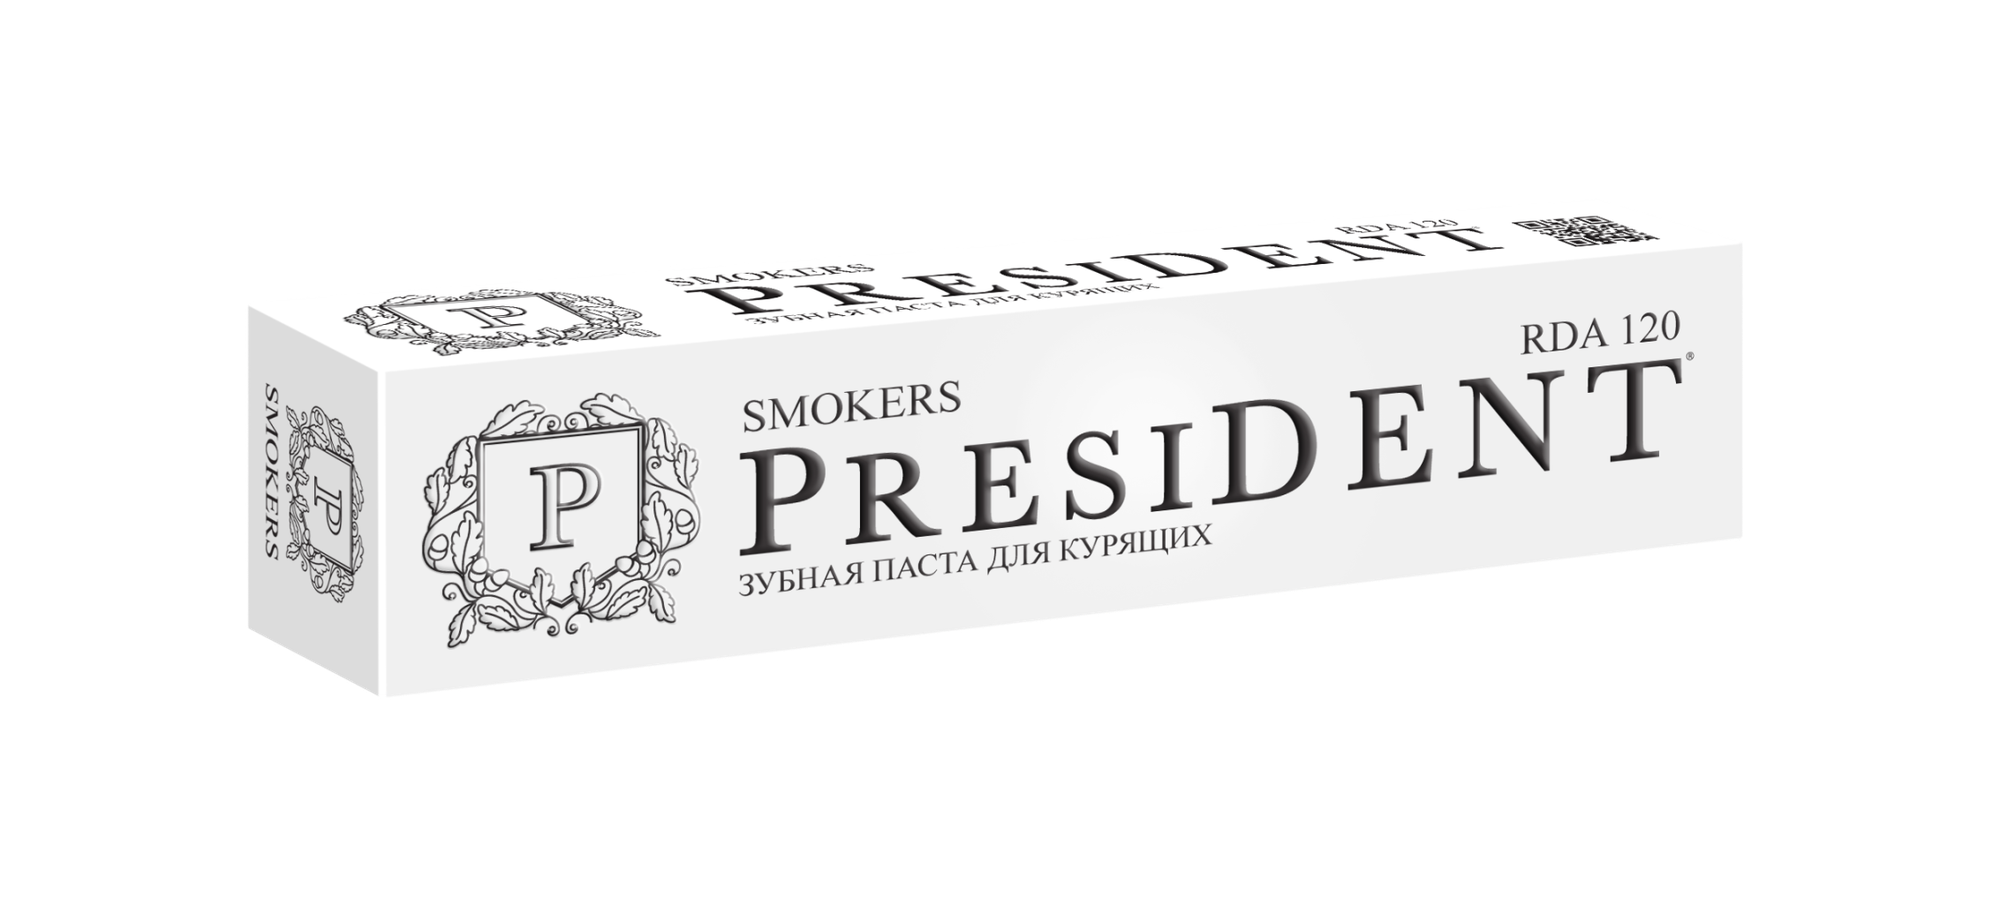 Набор из 3 штук President President Smokers зубная паста 75мл